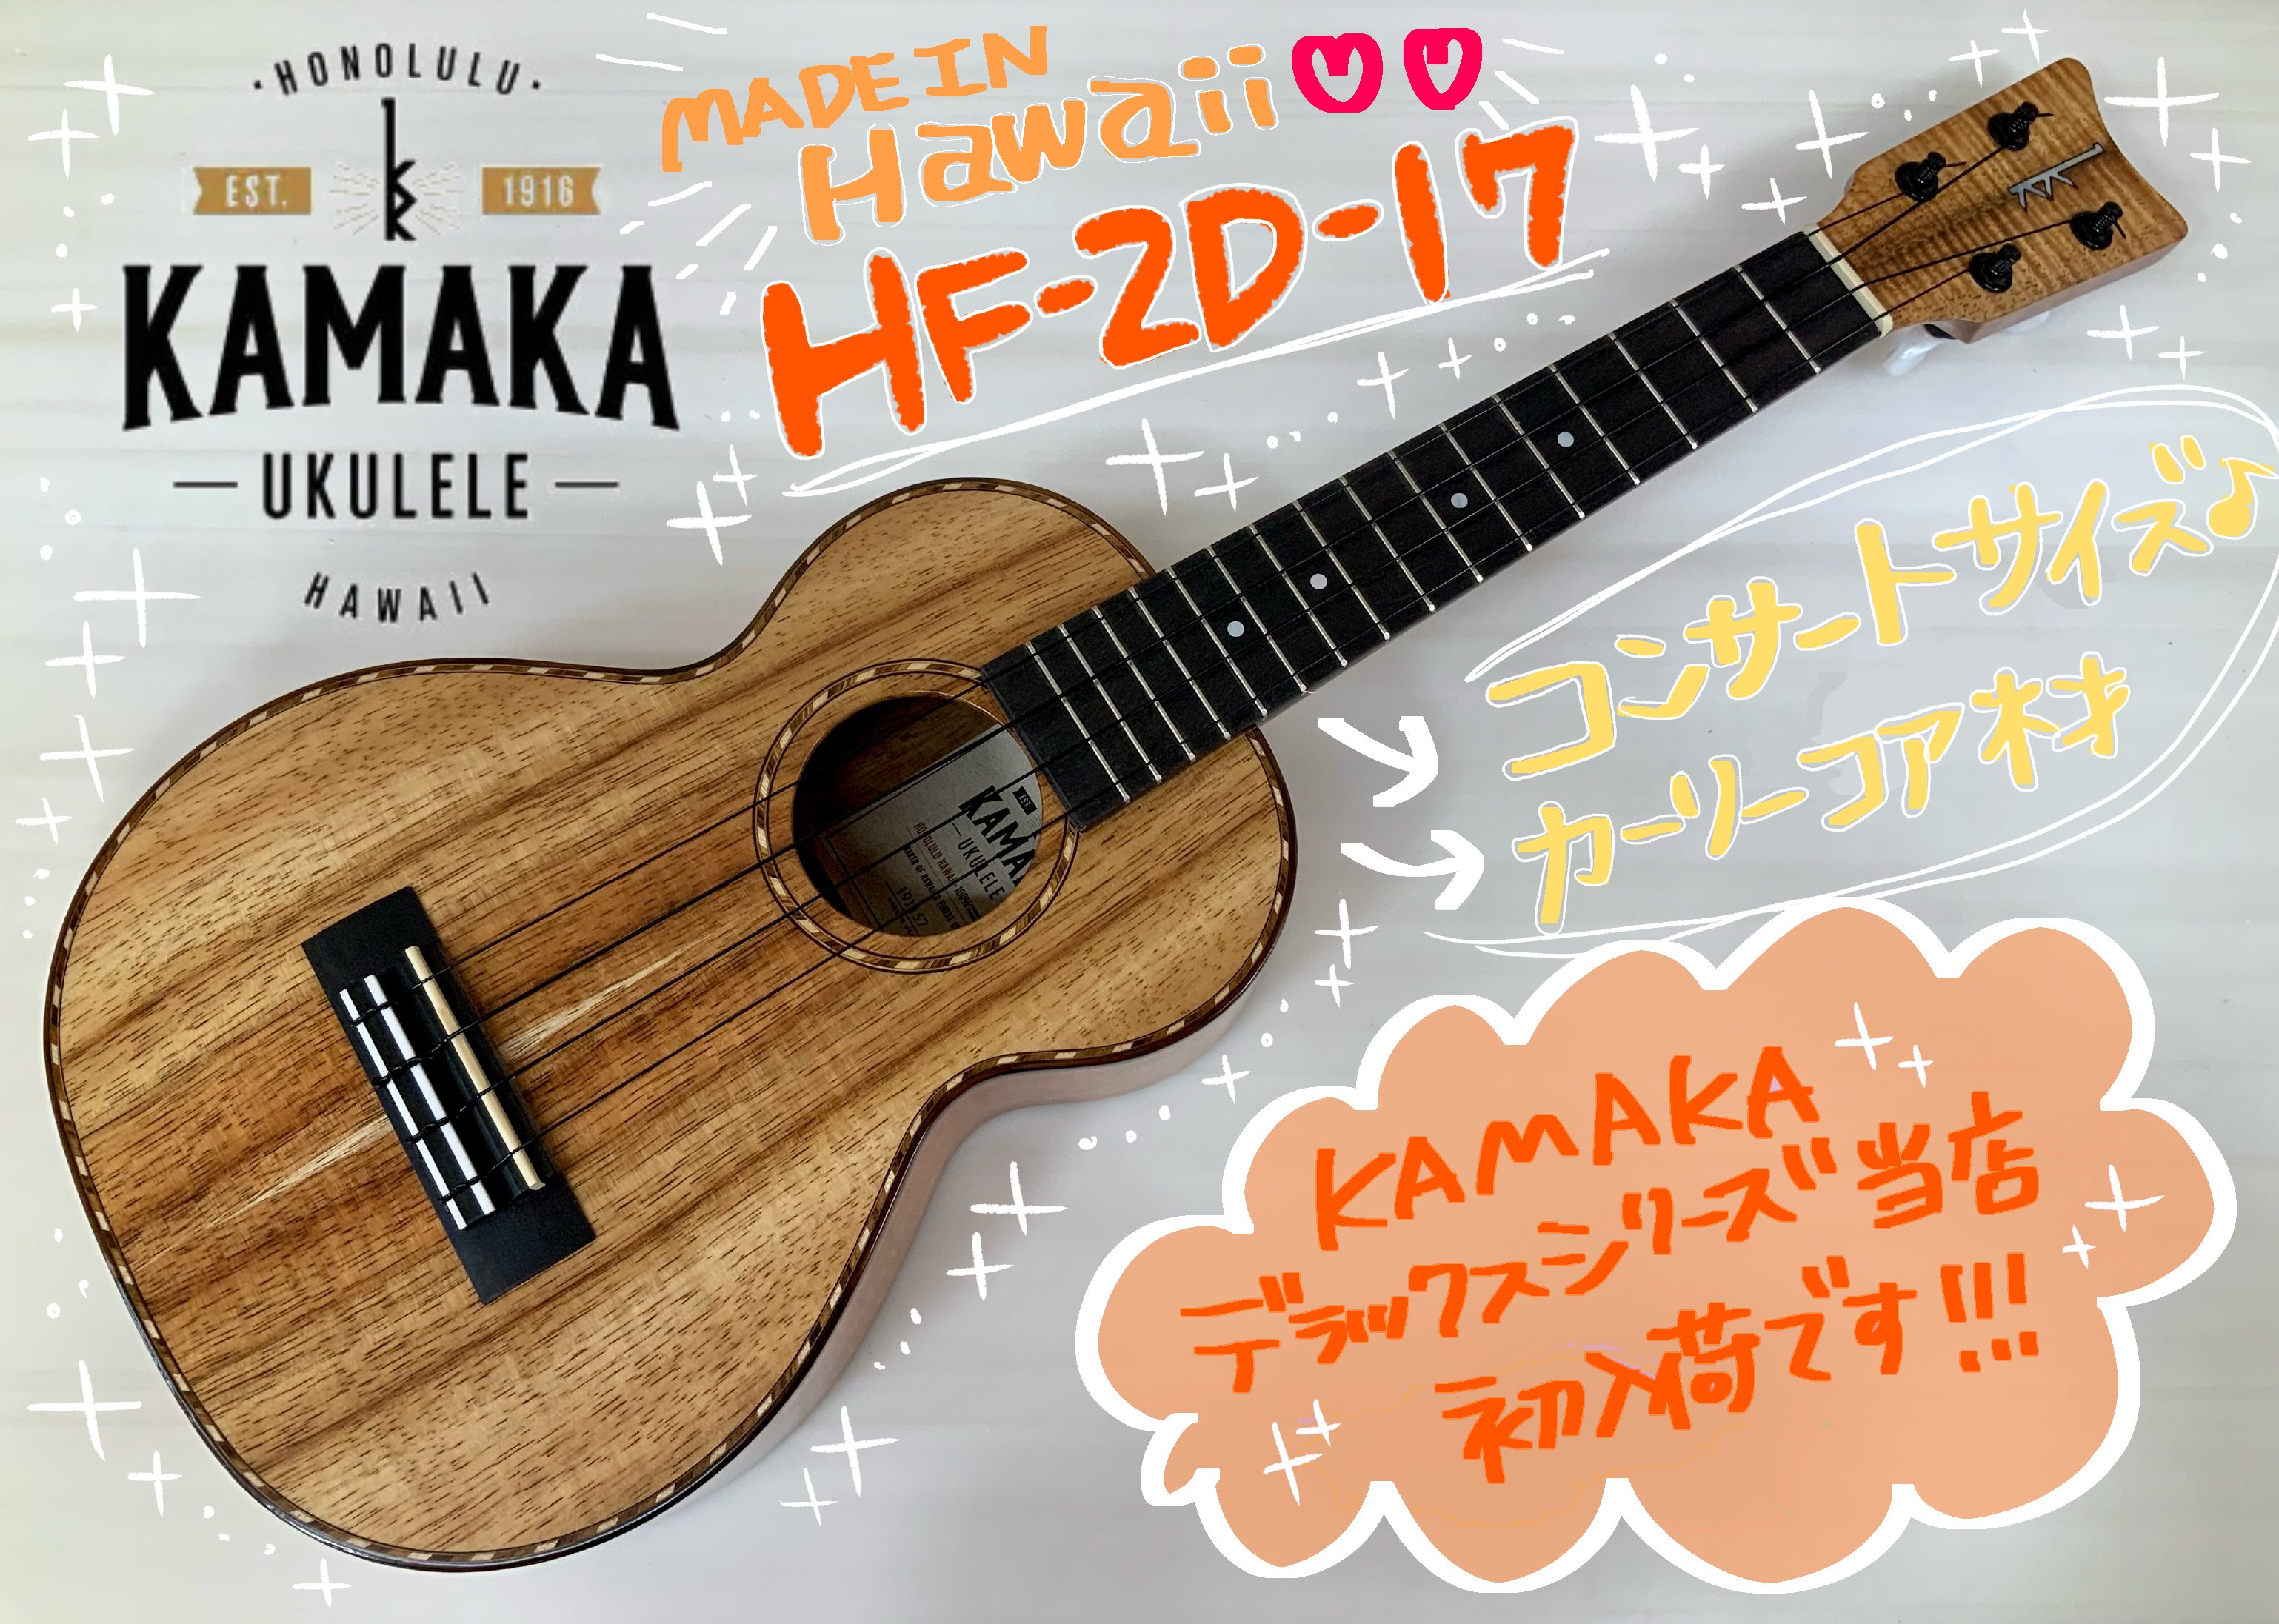 KAMAKA HF-2D-17 コンサートサイズ入荷しました♪ 商品のお問い合わせはこちらまで♪